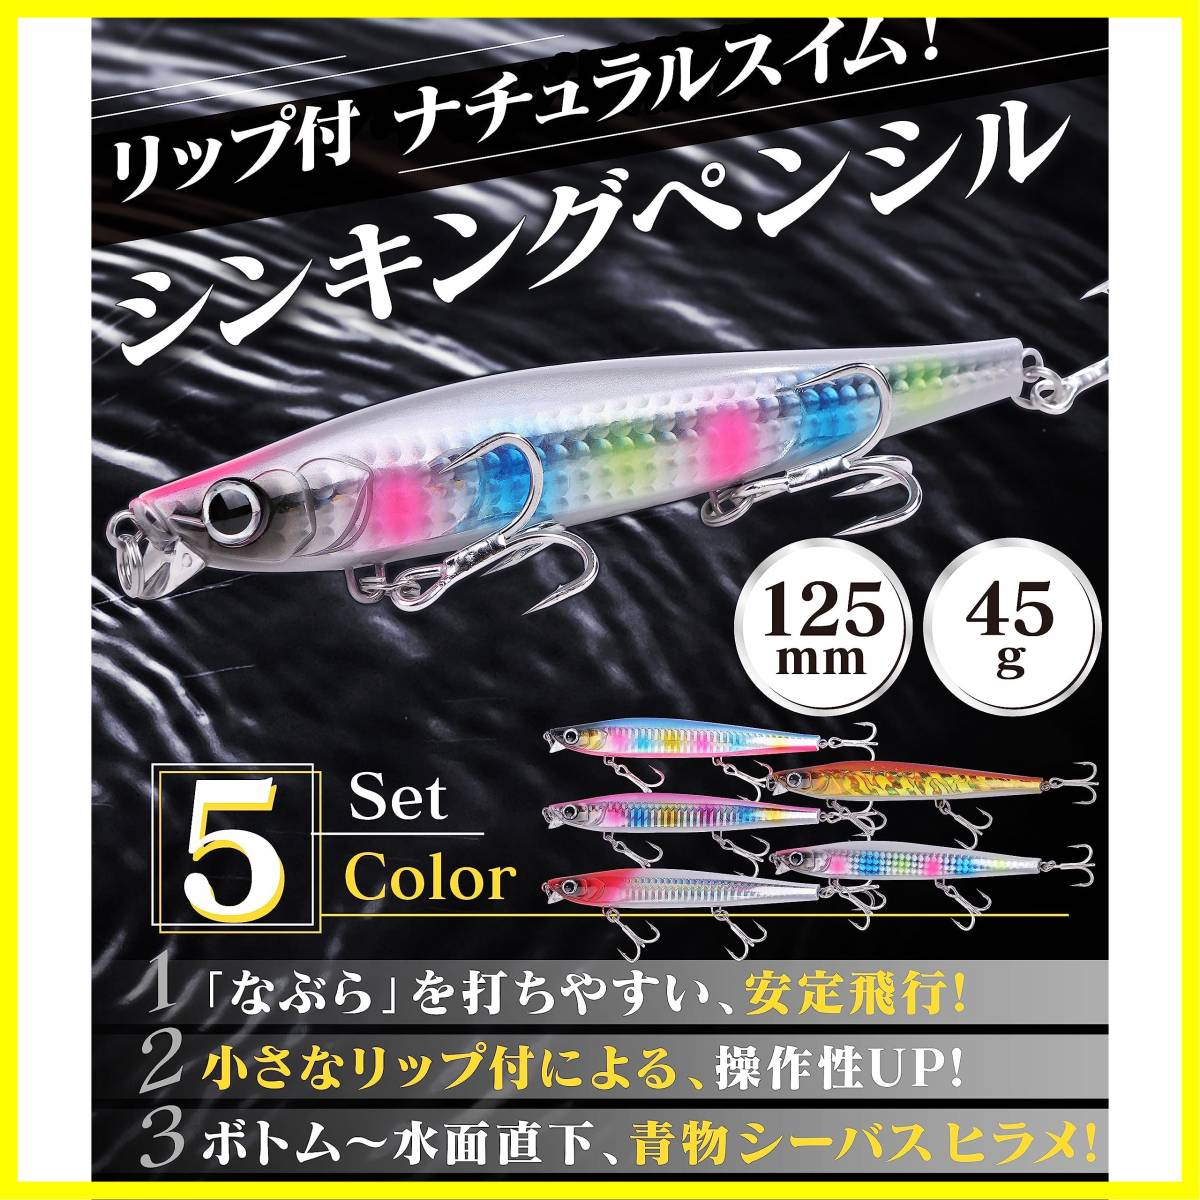 【新着商品】Contyu シンキングペンシル セット 105mm 31g / 125mm 45g リップ付 シーバス ヒラメ シン